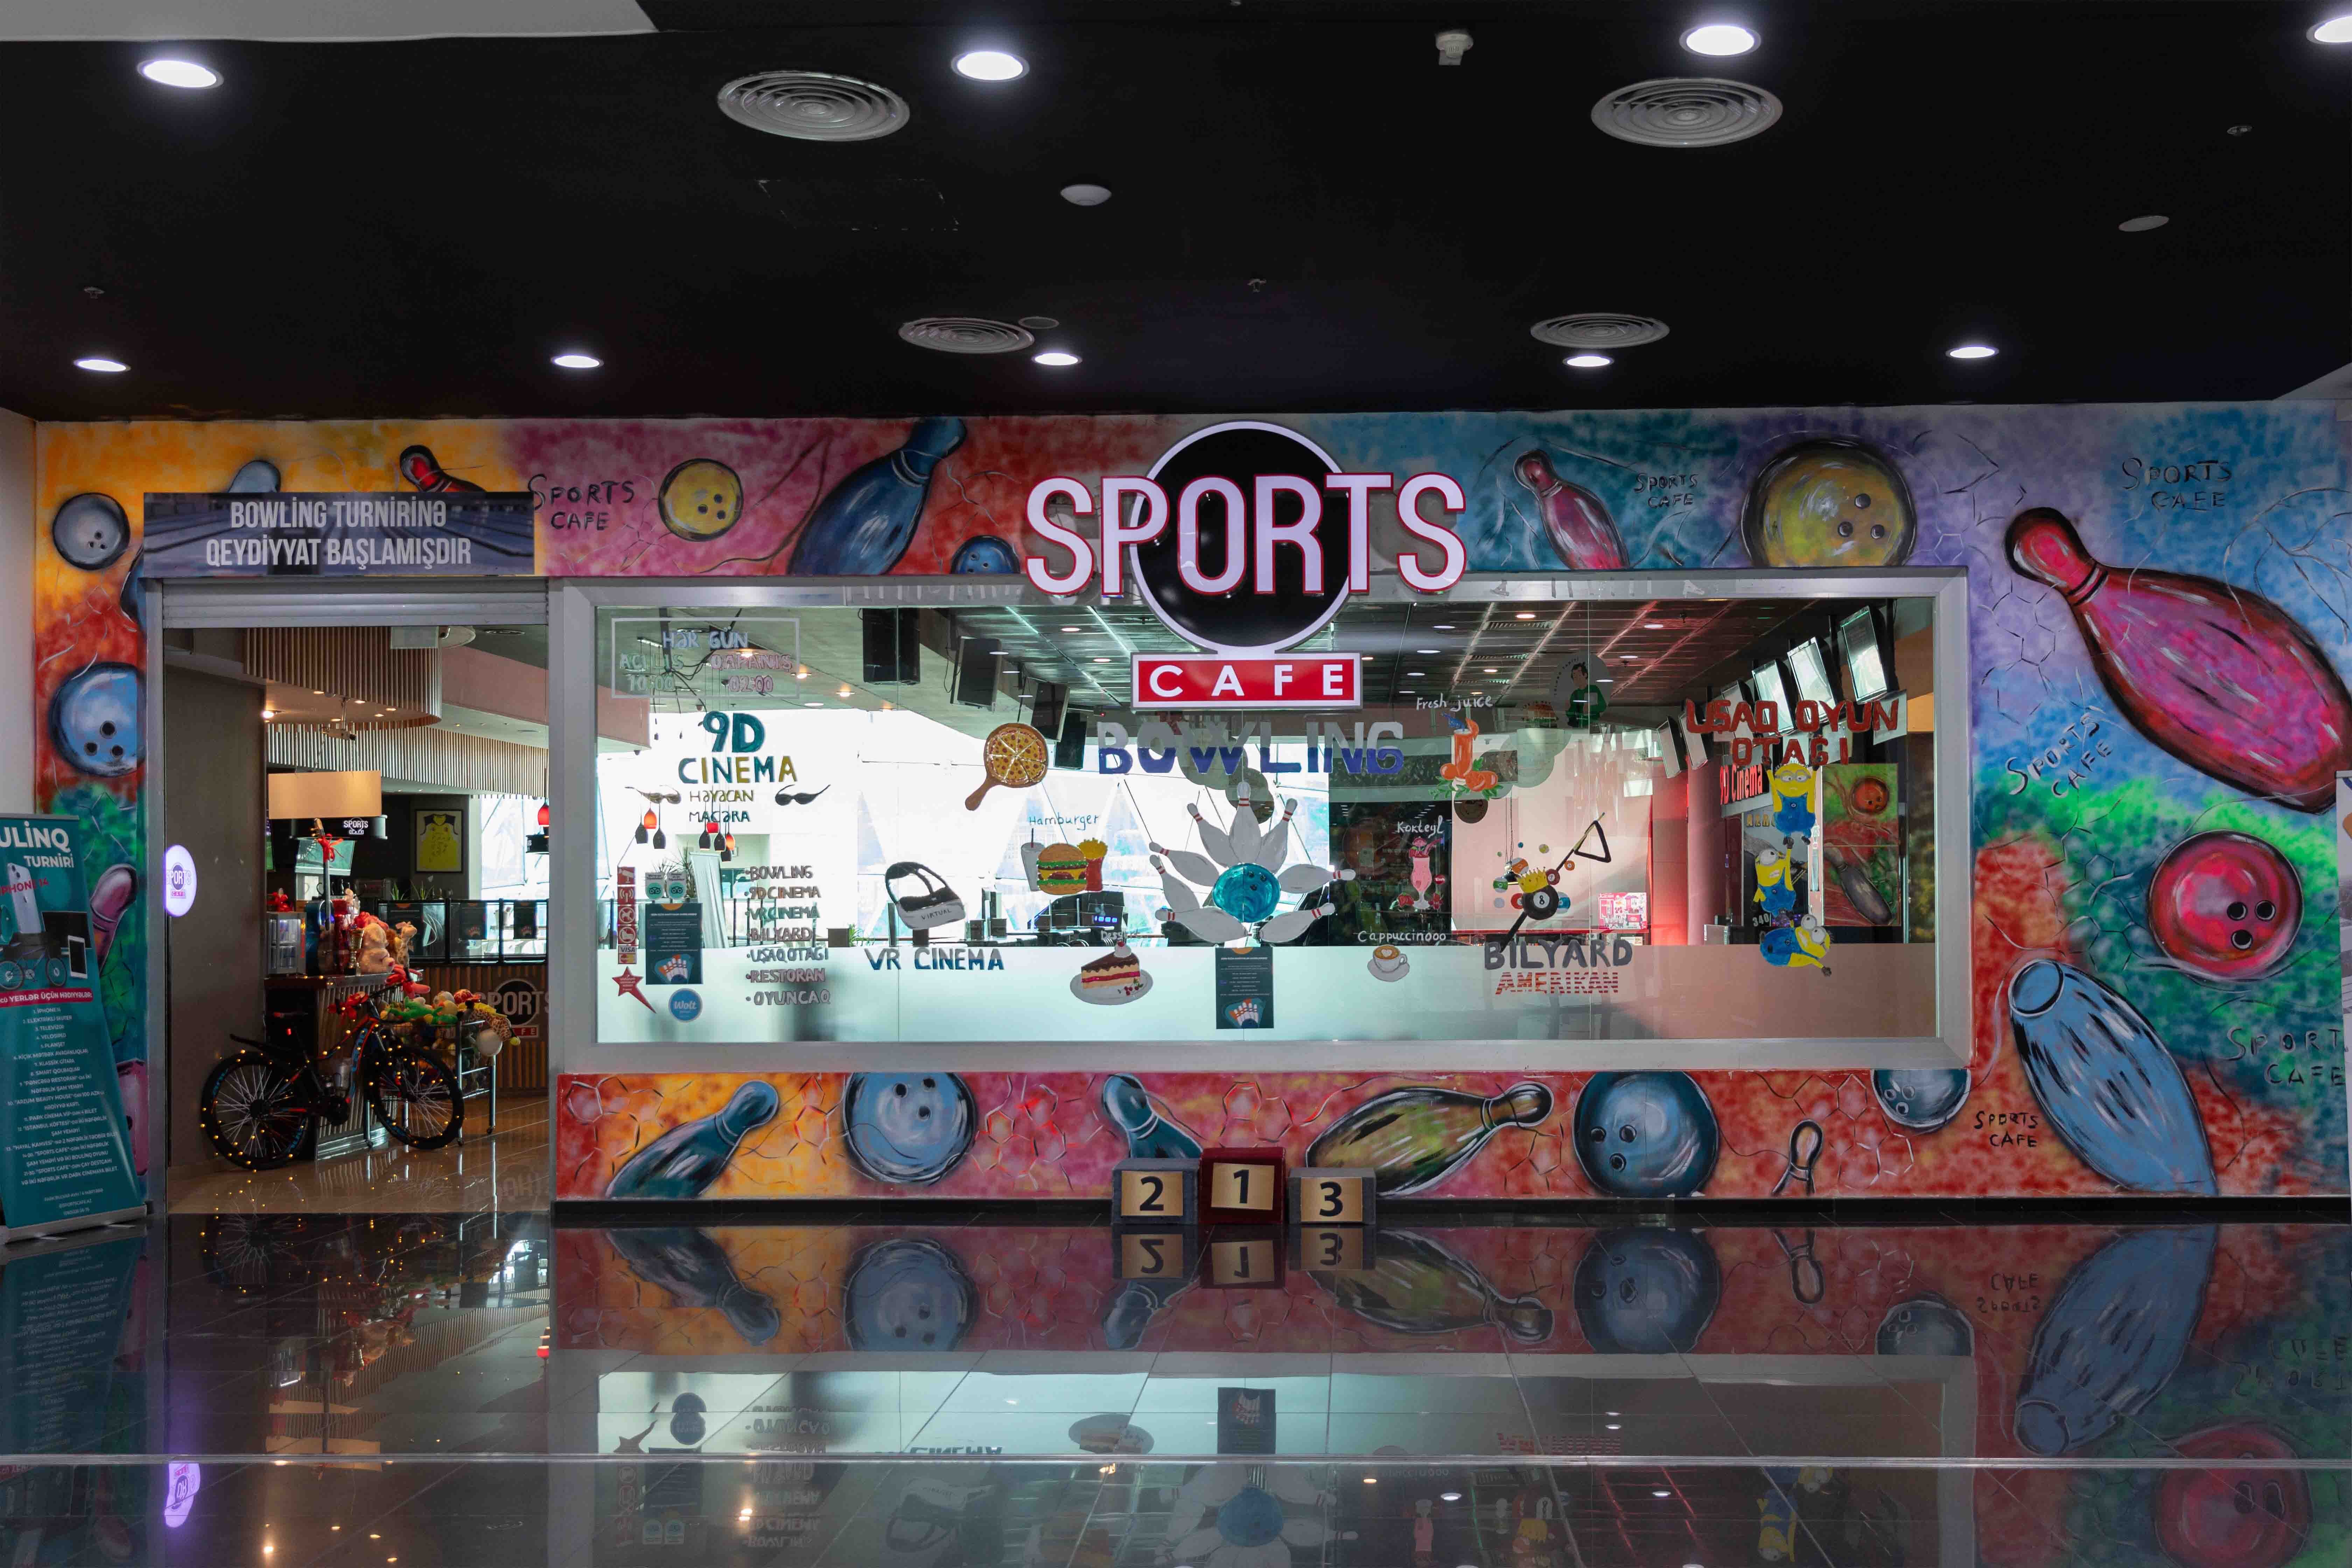 Sports-cafe